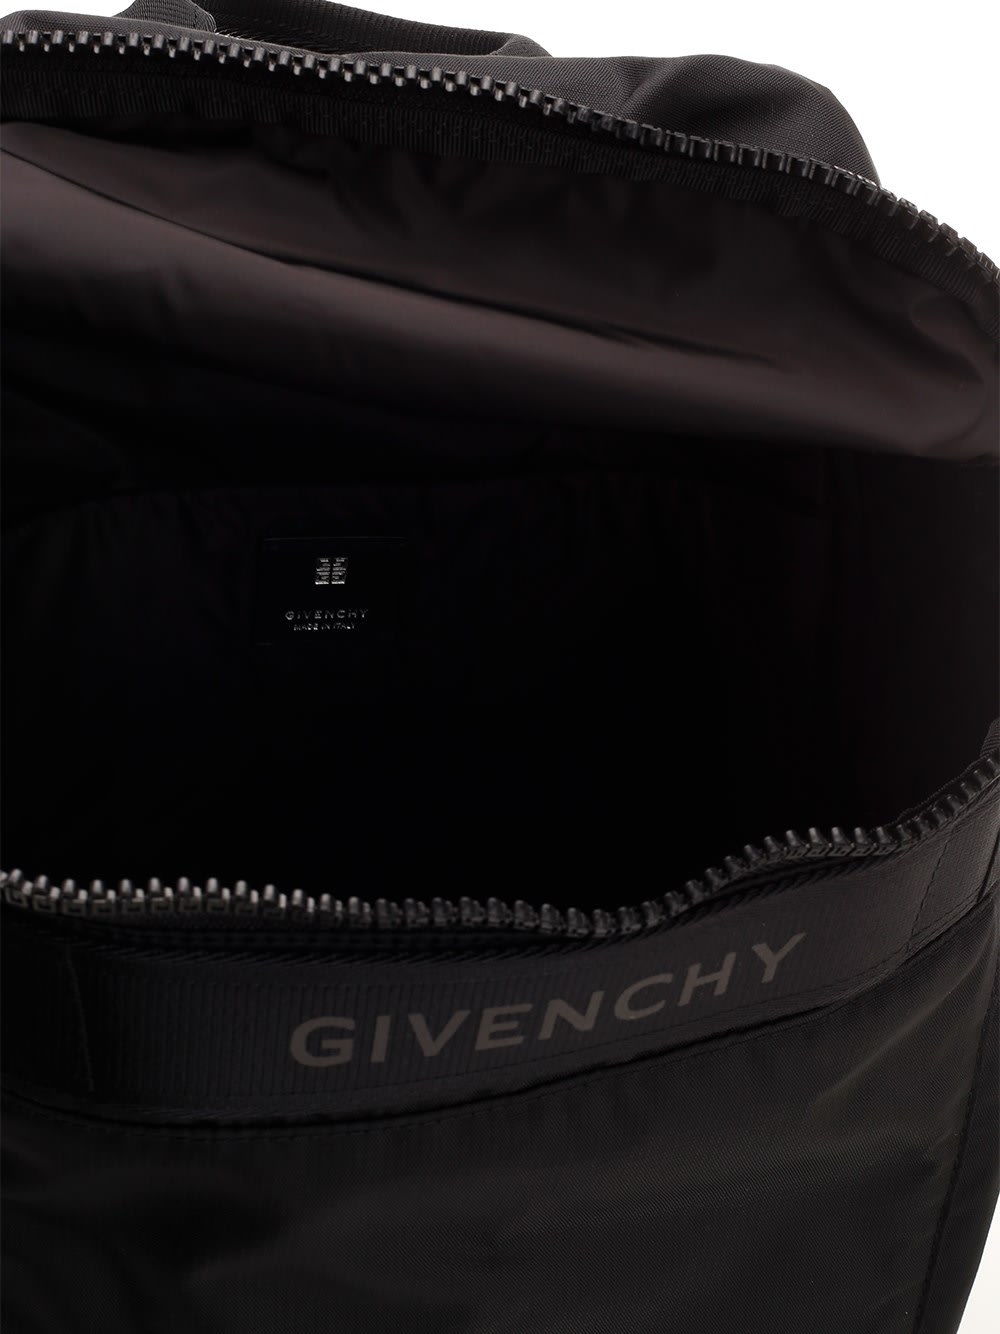 Shop Givenchy G-trek Backpack